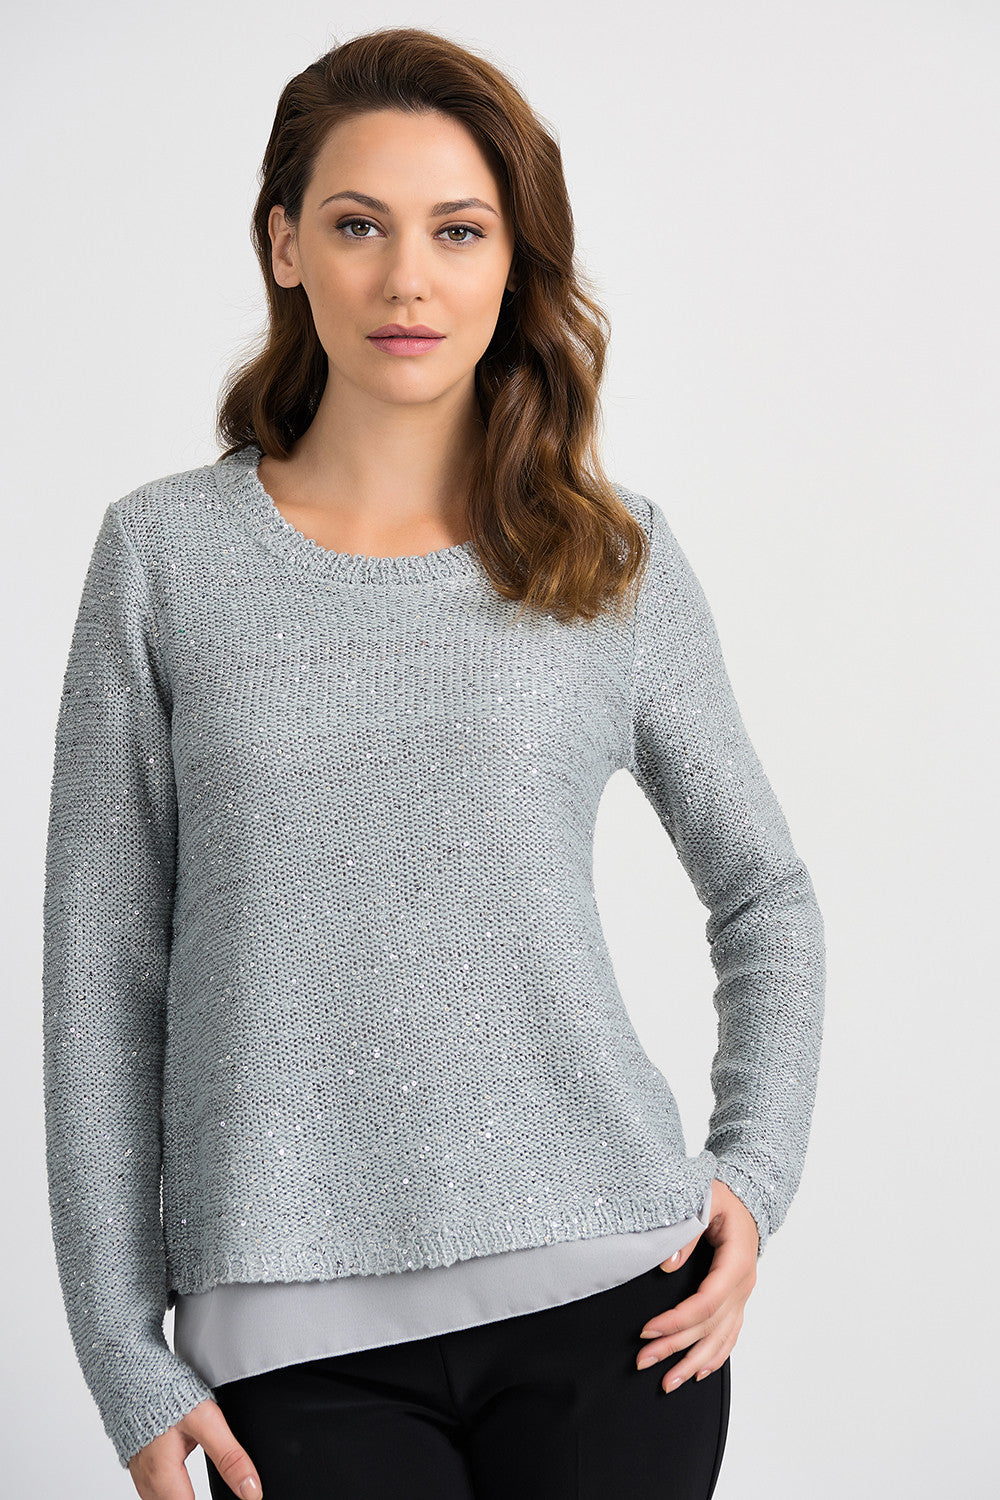 Verplaatsing prieel attent Joseph Ribkoff Sweater Style 201917 – BoTiki Online Store